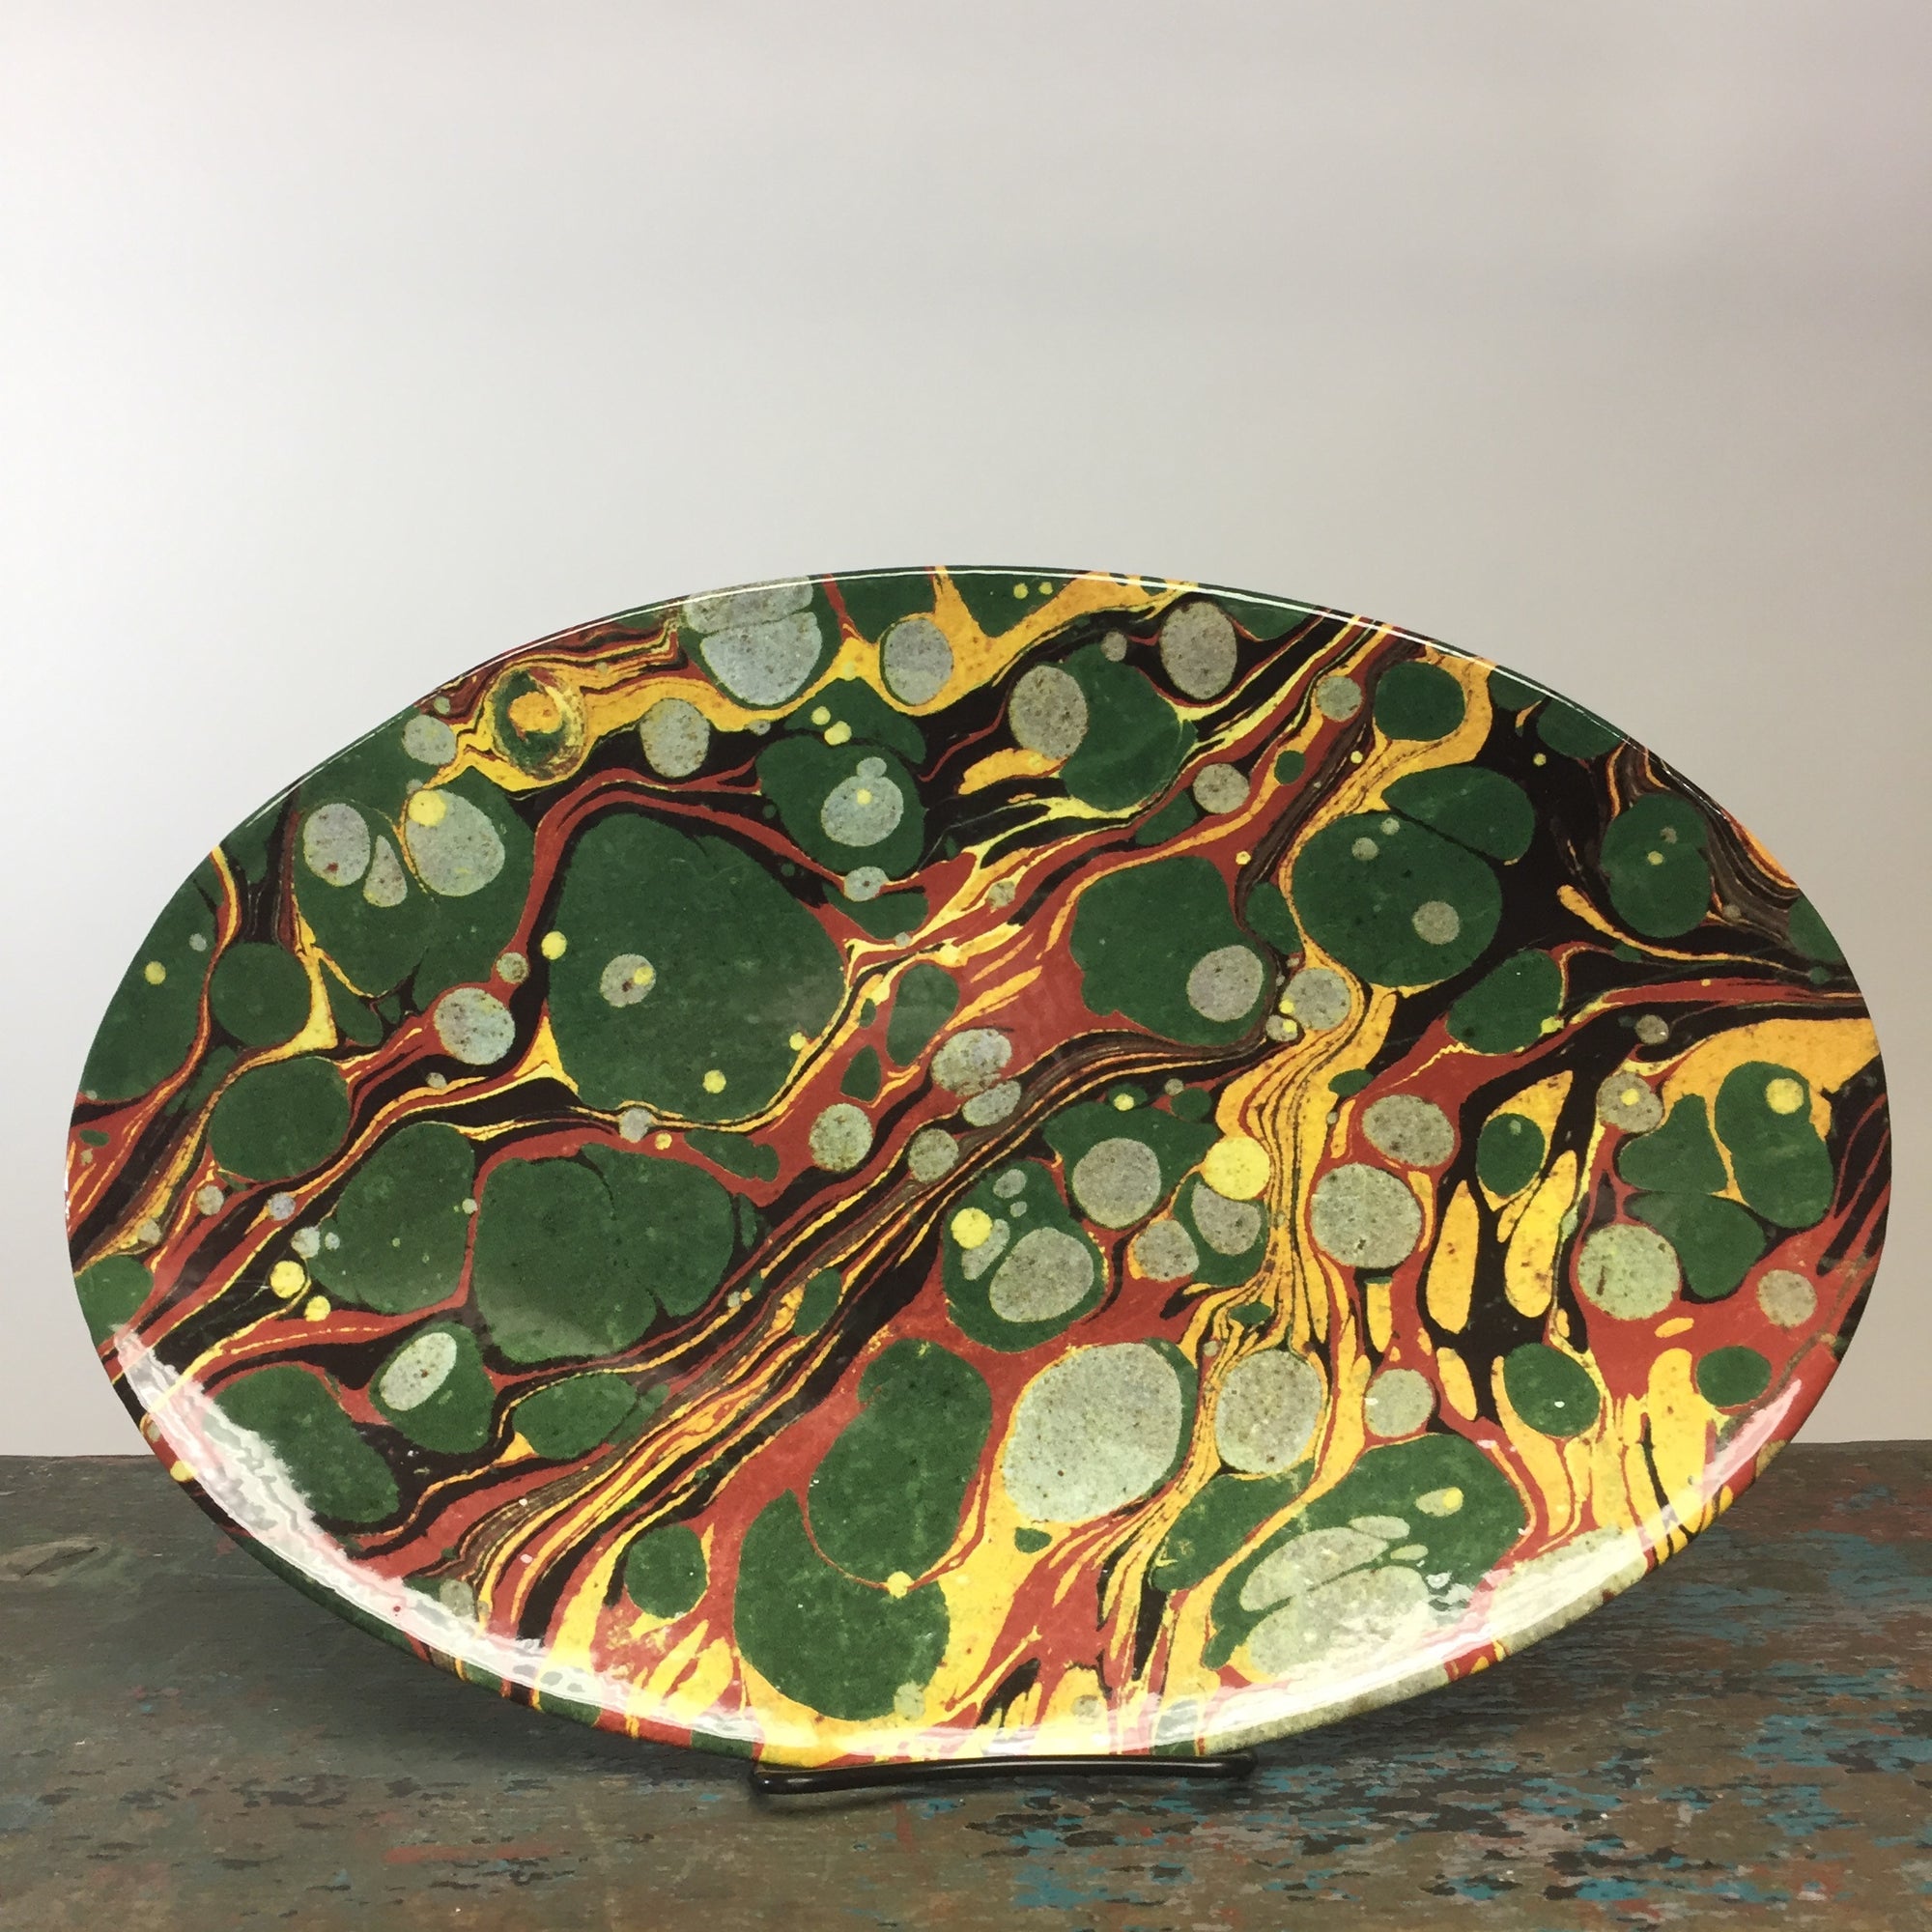 Astier de Villatte John Derian Oval Green, Red and Yellow Marble Platter